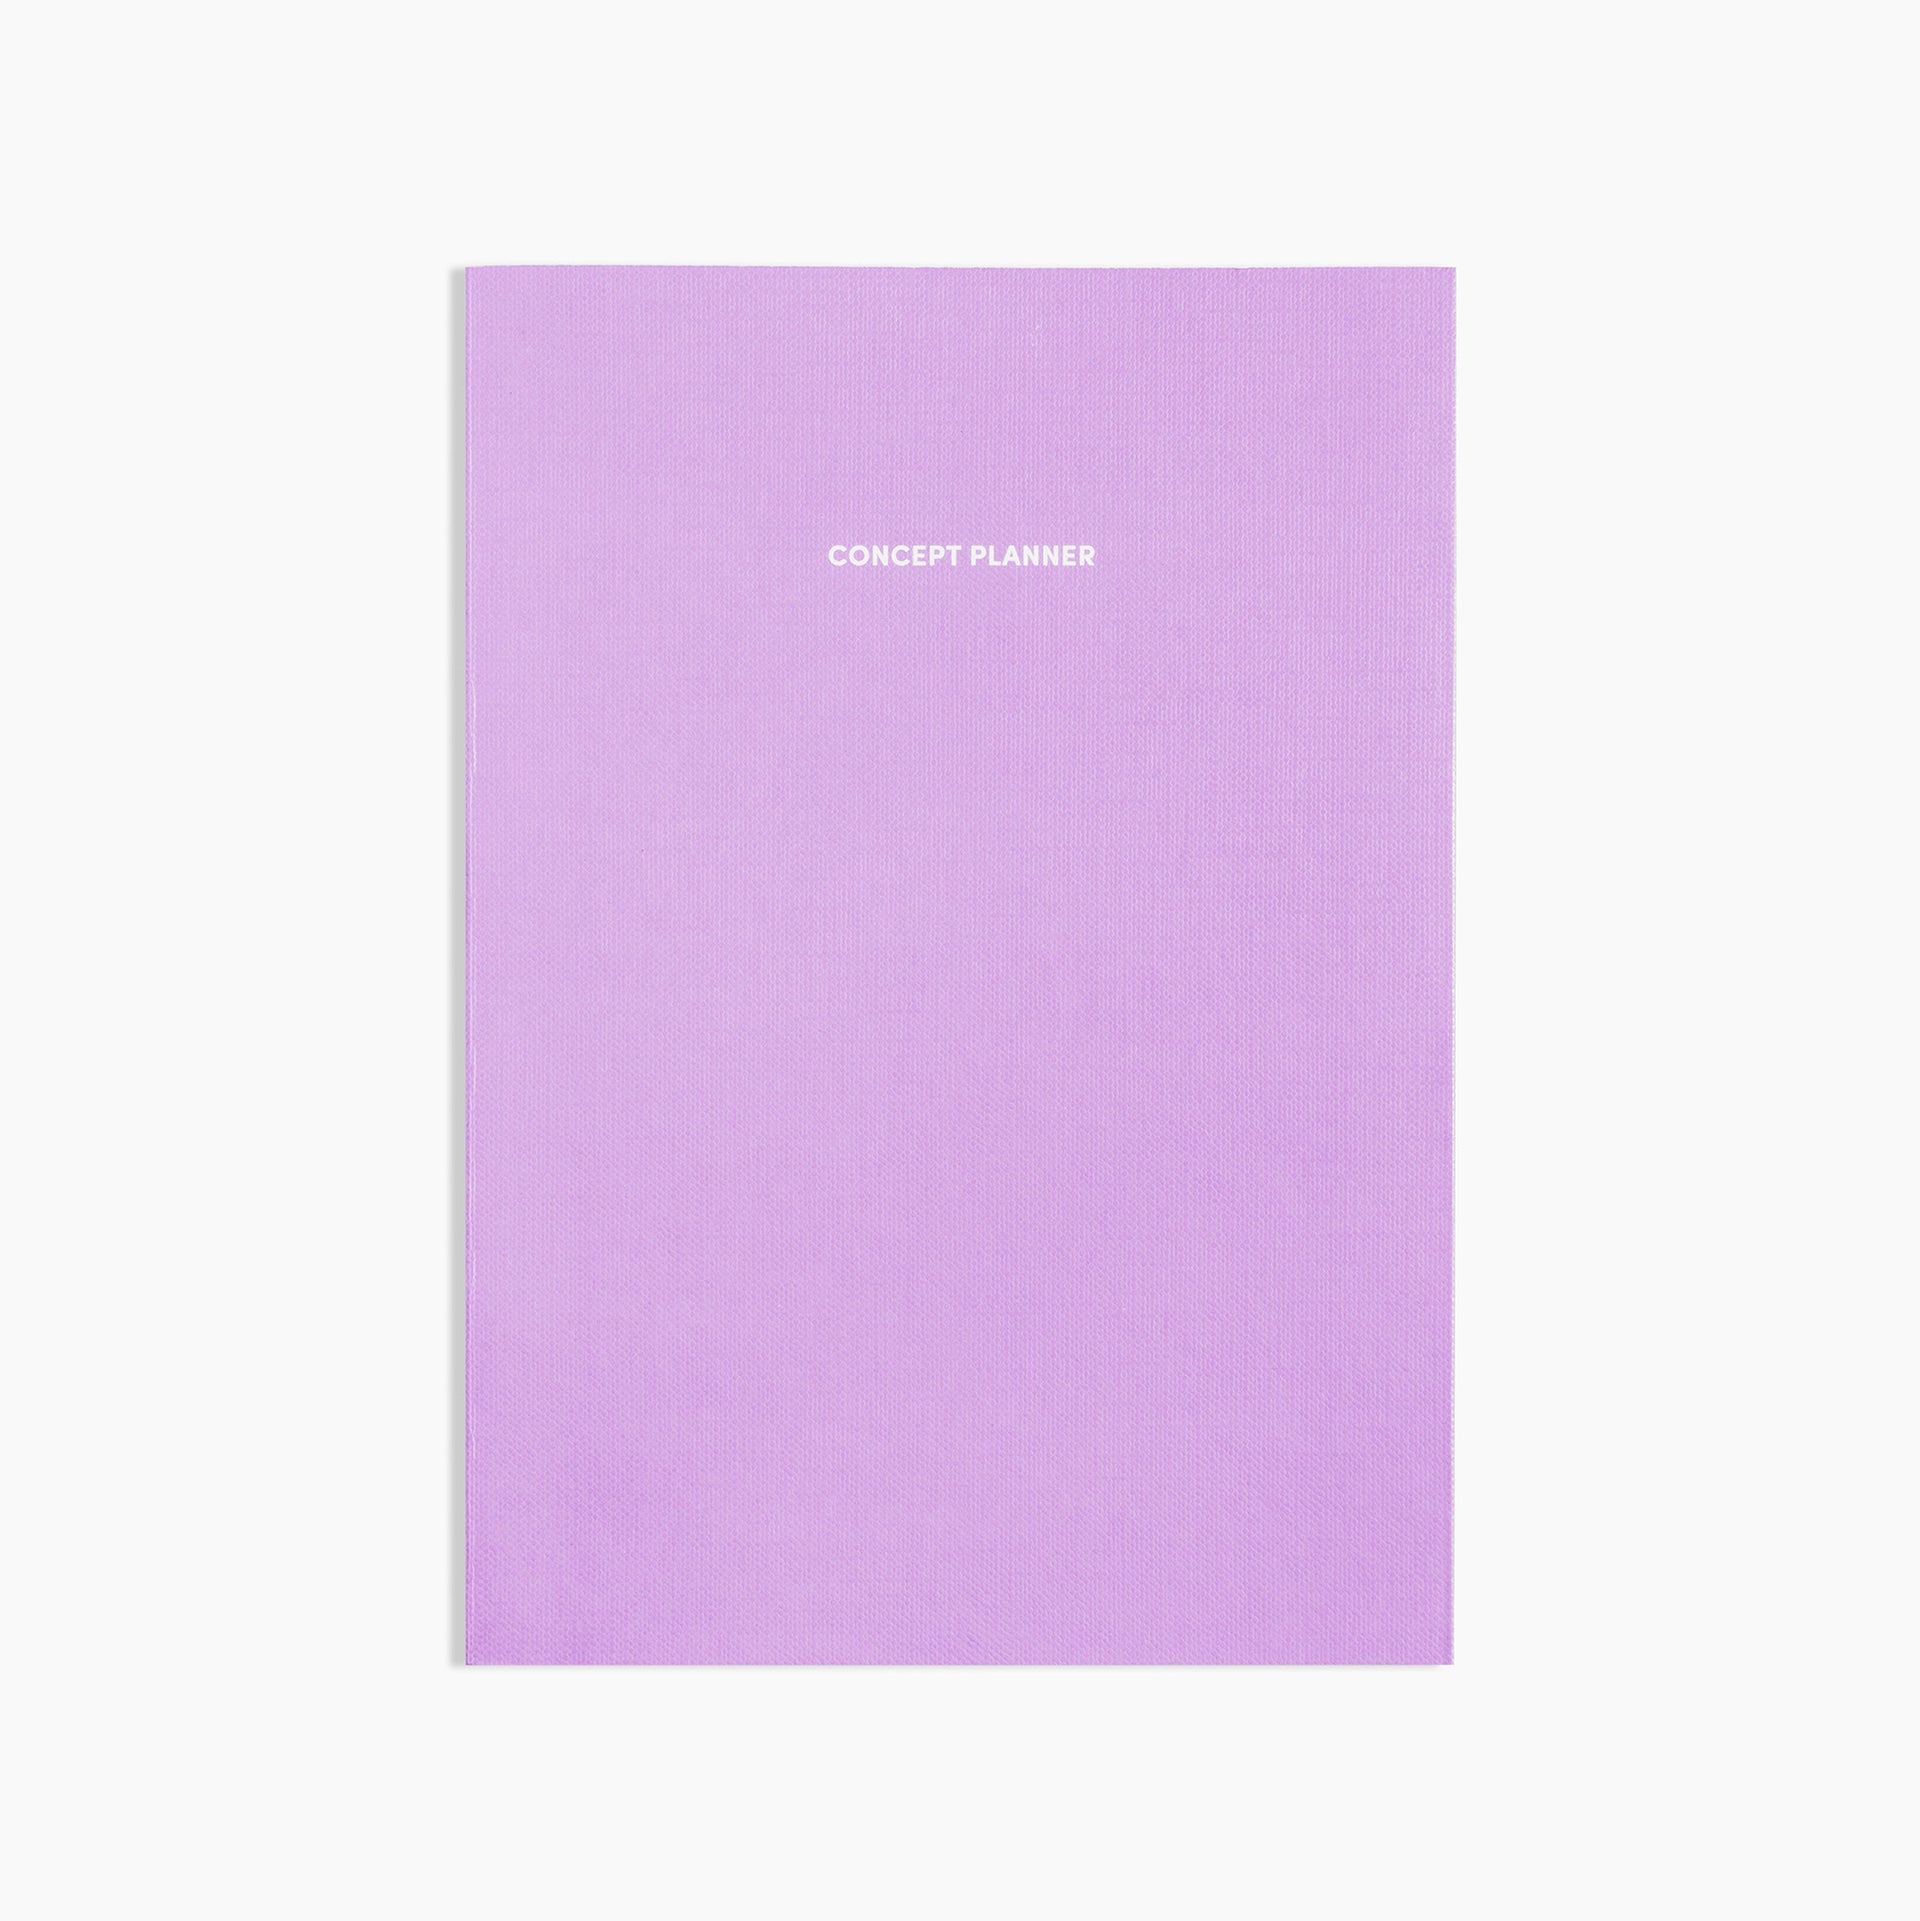 Poketo Concept Planner in Lavender